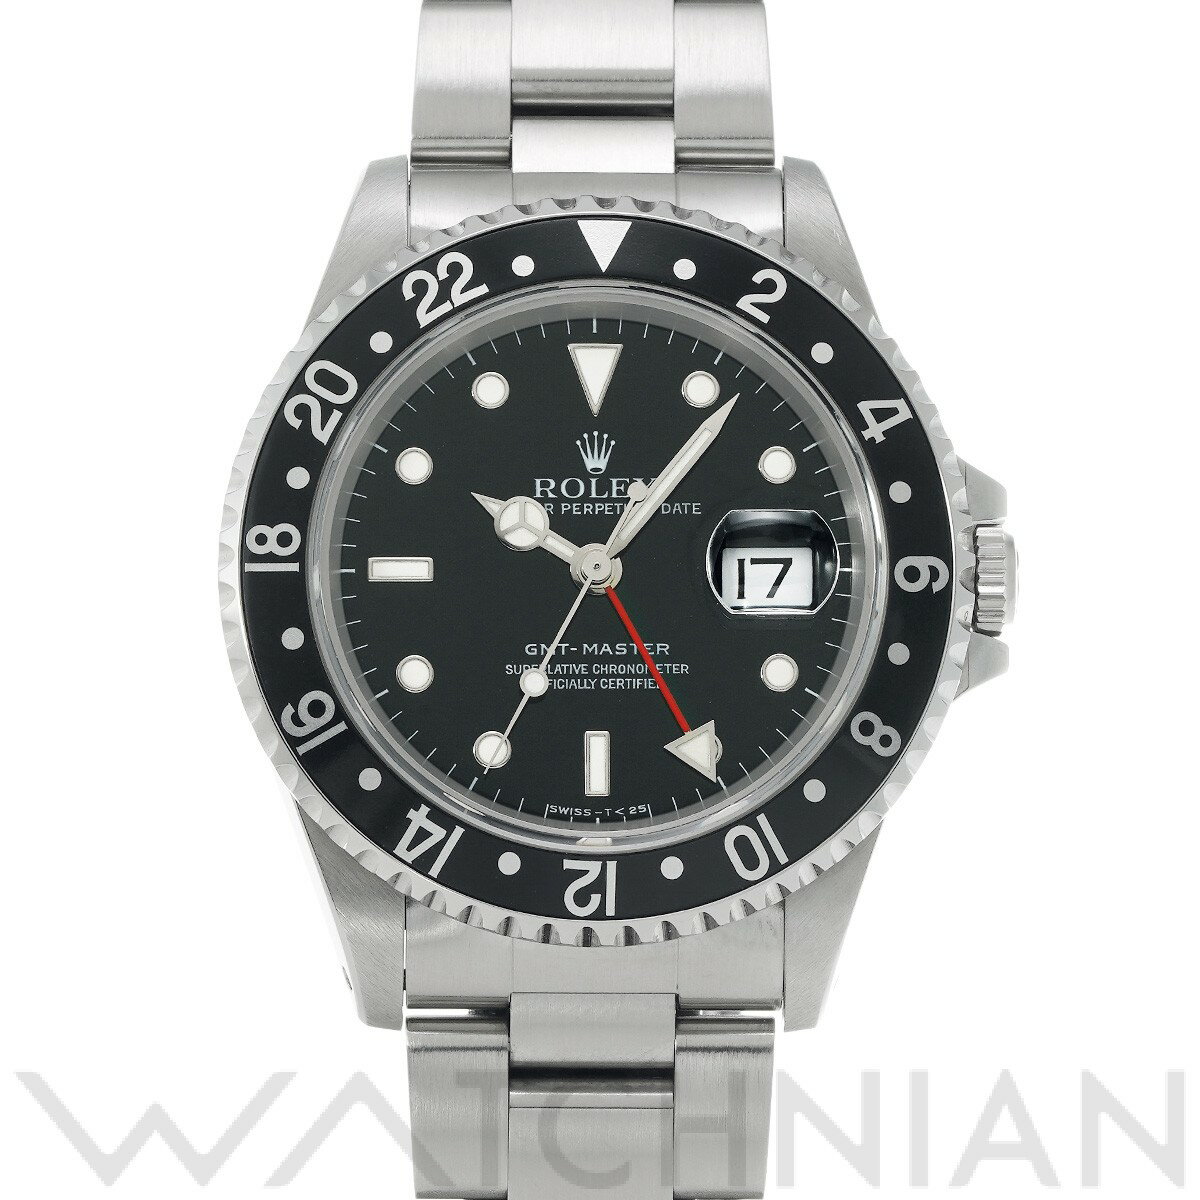 【5種選べるクーポン】【ローン60回払い無金利】【中古】 ロレックス ROLEX GMTマスター 16700 T番(1996年頃製造) ブラック メンズ 腕時計 ロレックス 時計 高級腕時計 ブランド